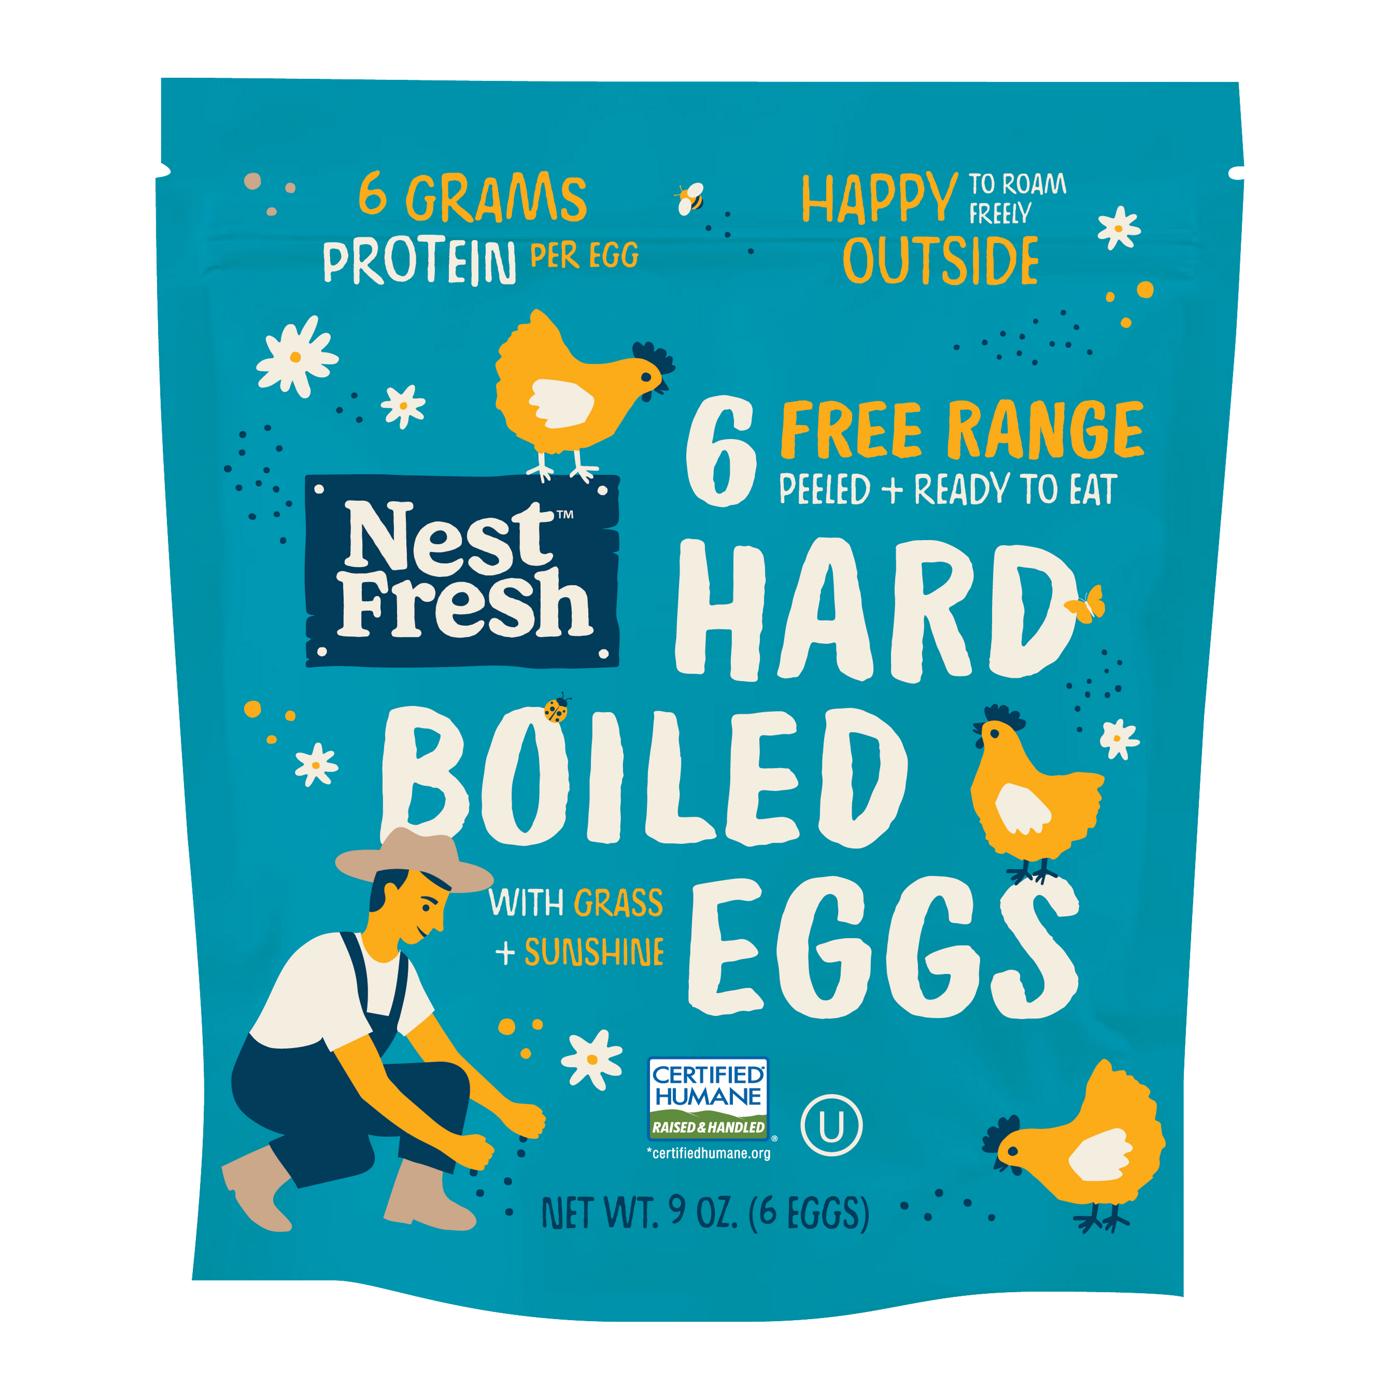 NestFresh Hard Boiled Eggs; image 1 of 2